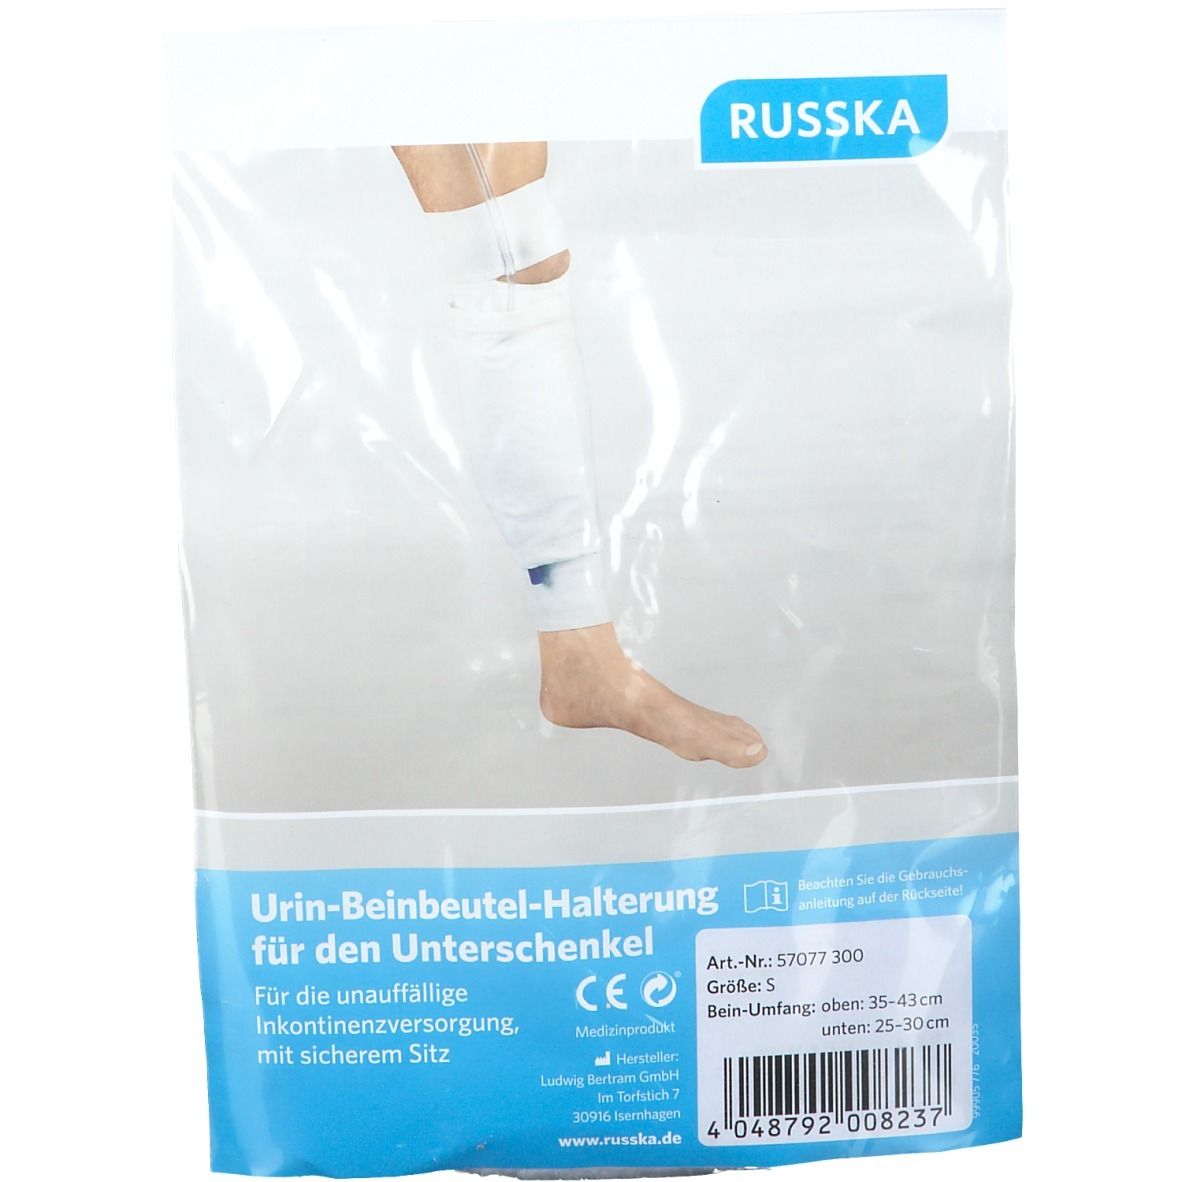 RUSSKA Urin-Beinbeutel-Halterung für den Unterschenkel Gr. S